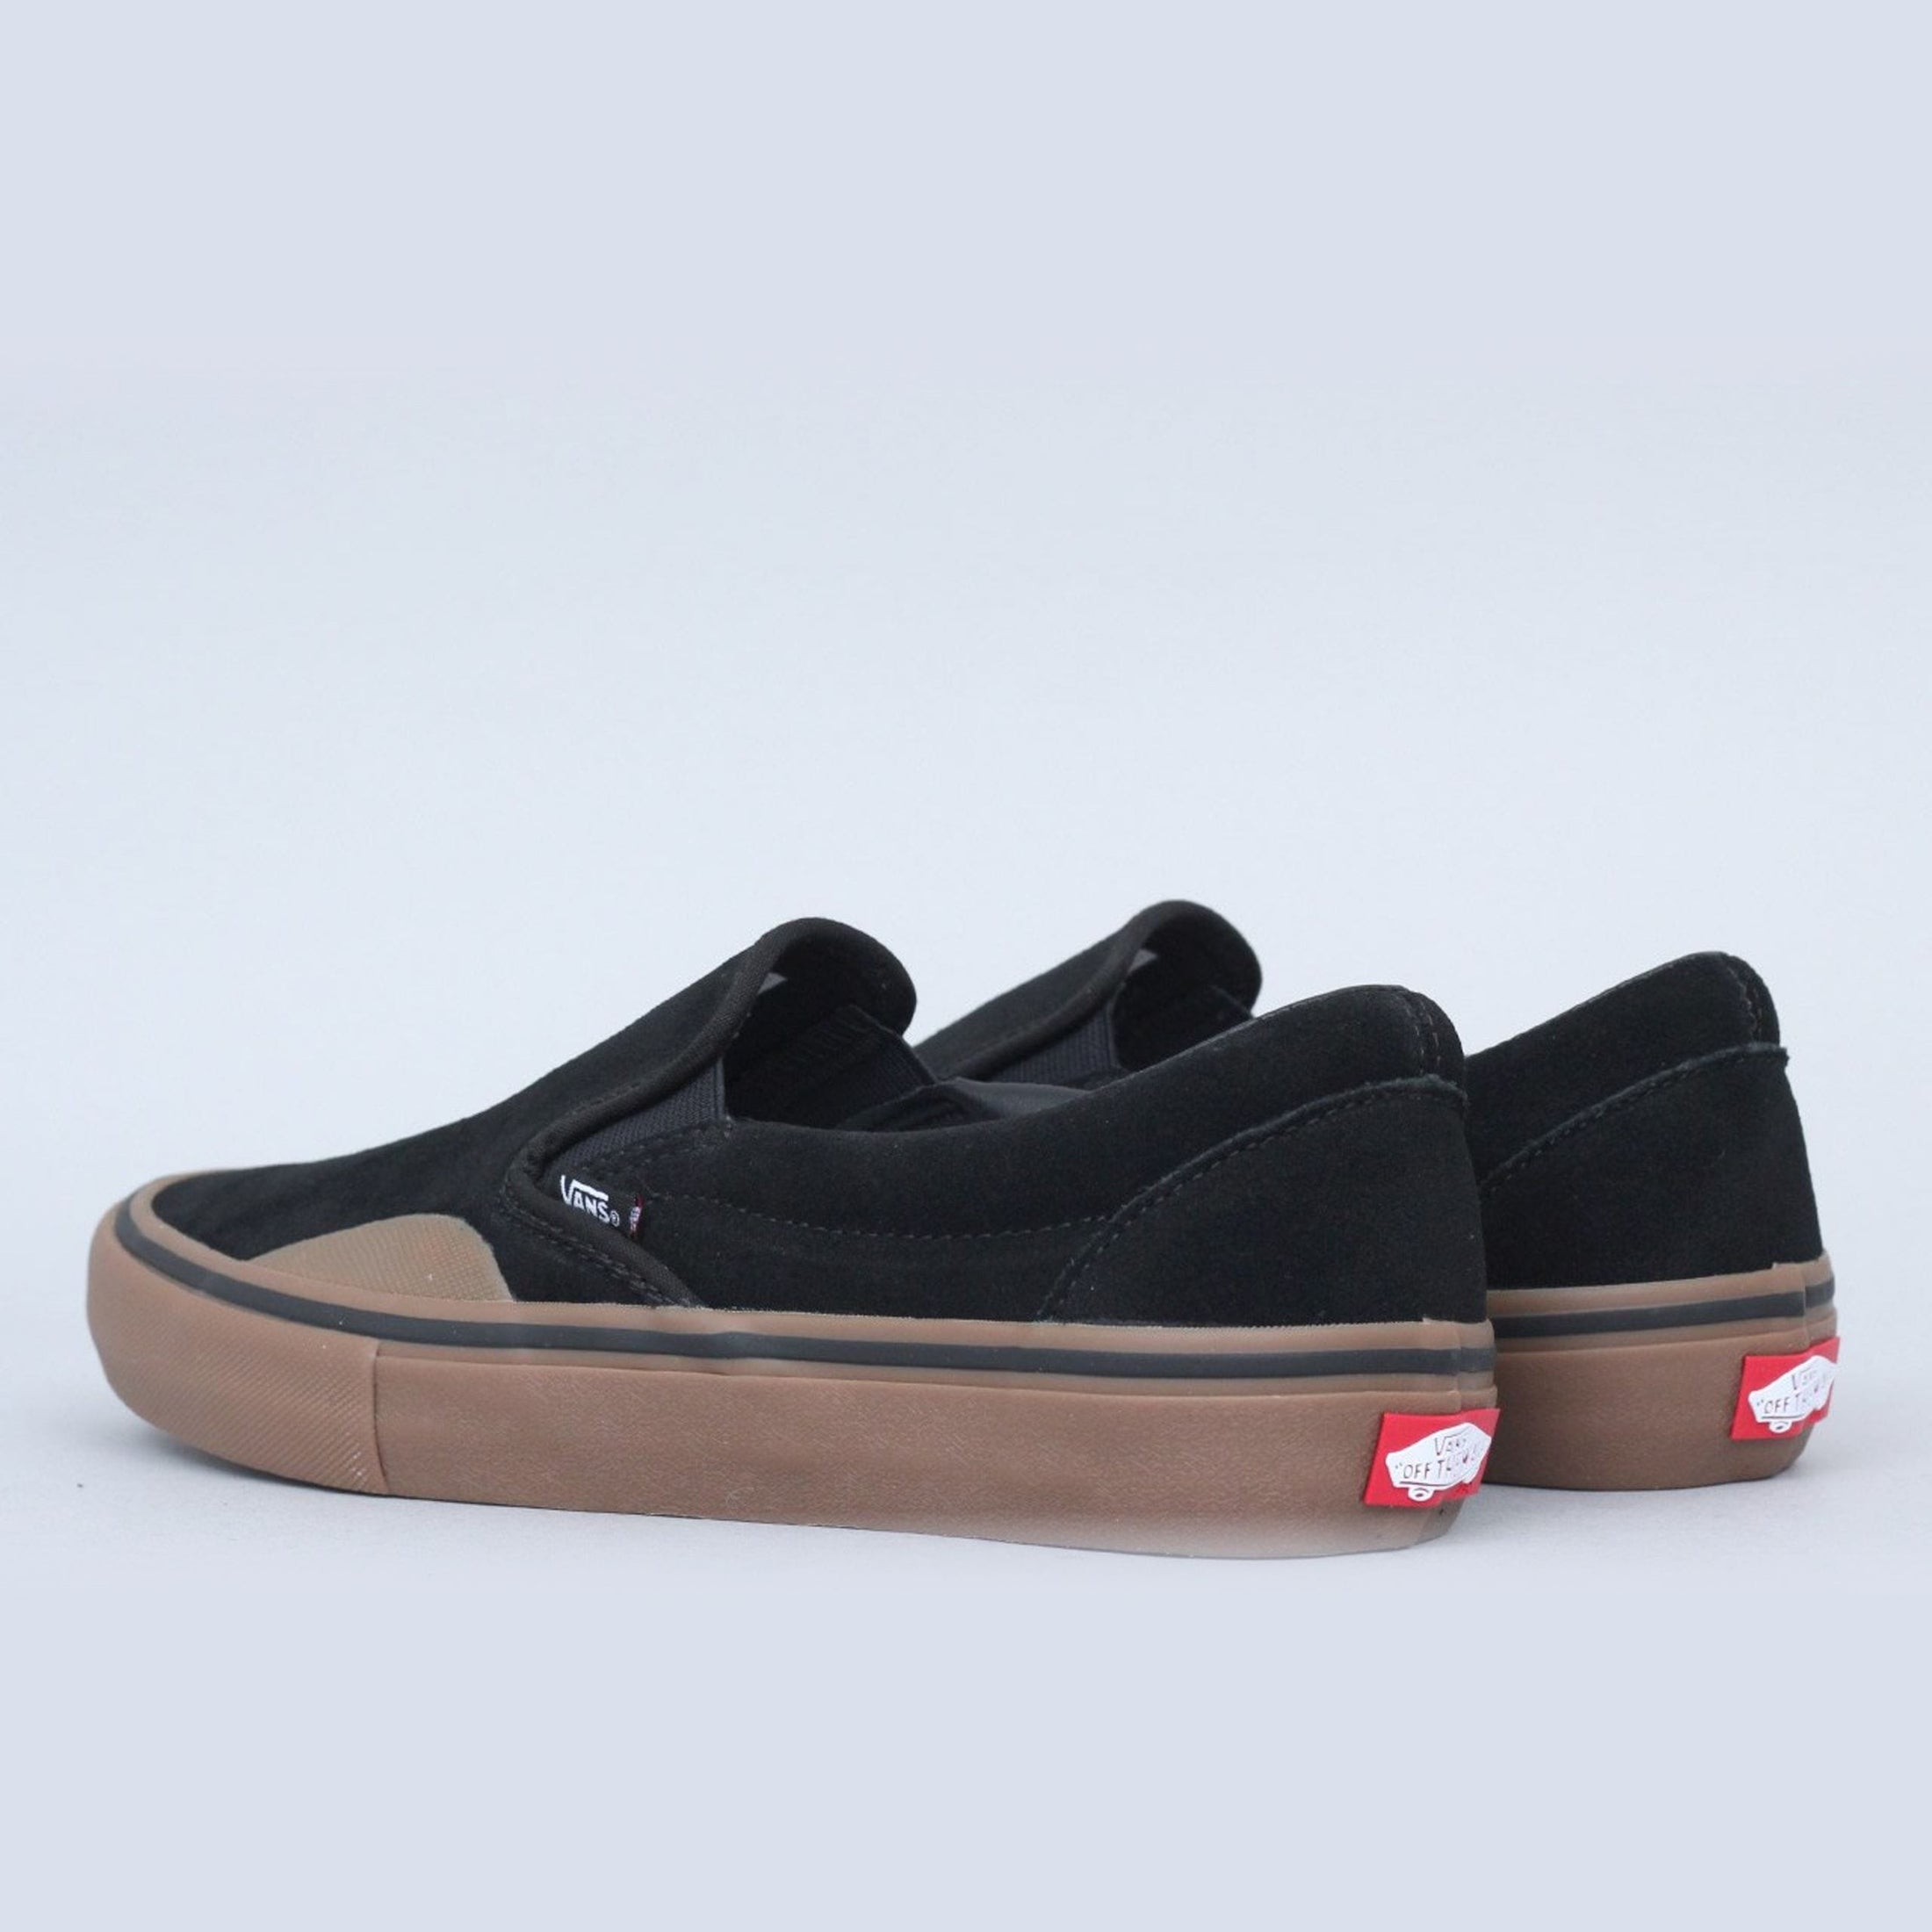 Vans Slip-On Pro Shoes (Rubber) Black / Gum